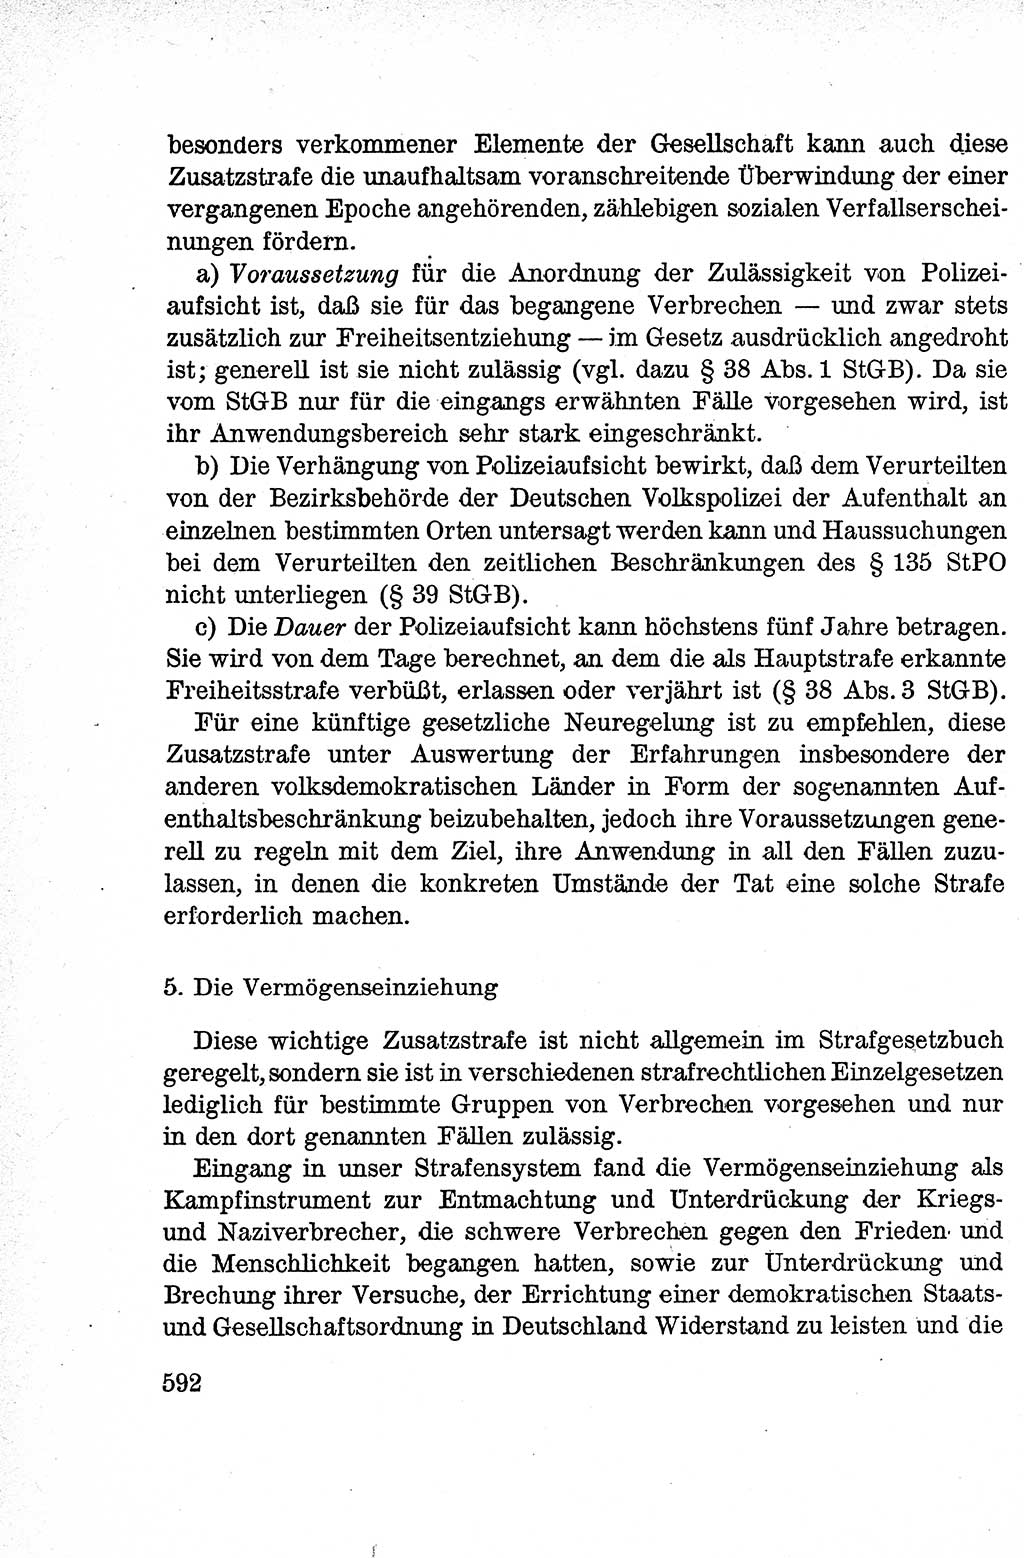 Lehrbuch des Strafrechts der Deutschen Demokratischen Republik (DDR), Allgemeiner Teil 1959, Seite 592 (Lb. Strafr. DDR AT 1959, S. 592)